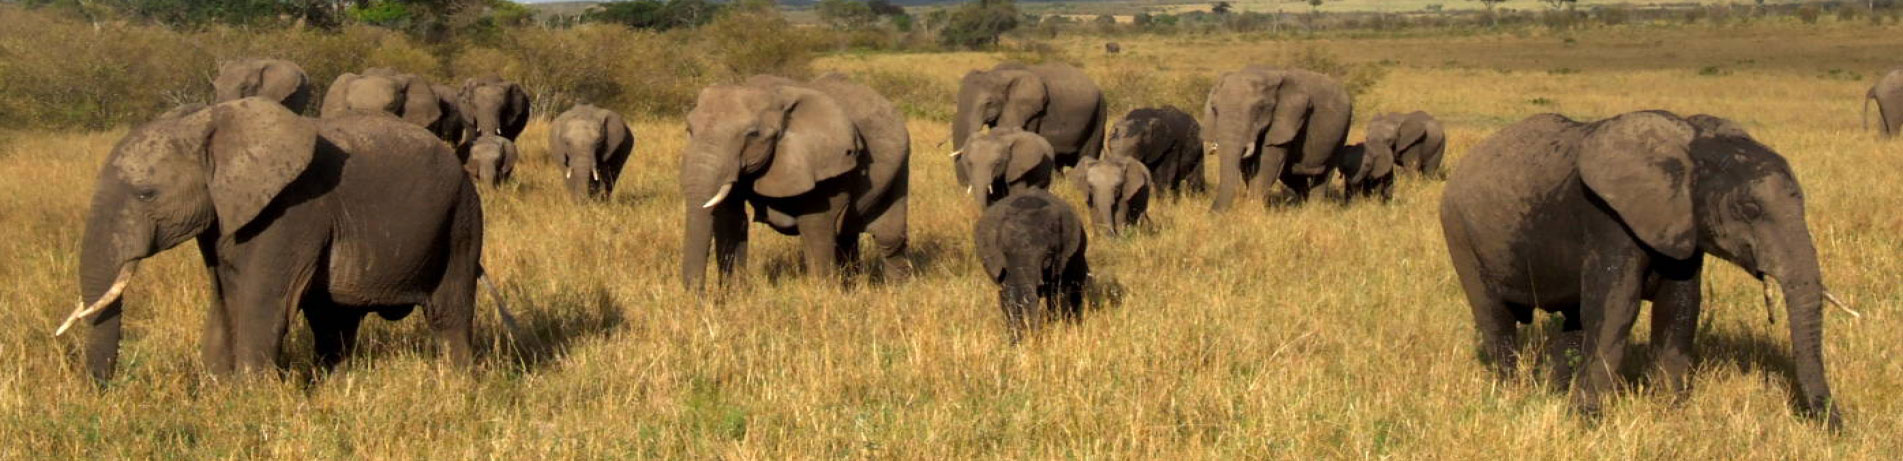 Herd of wild elephants